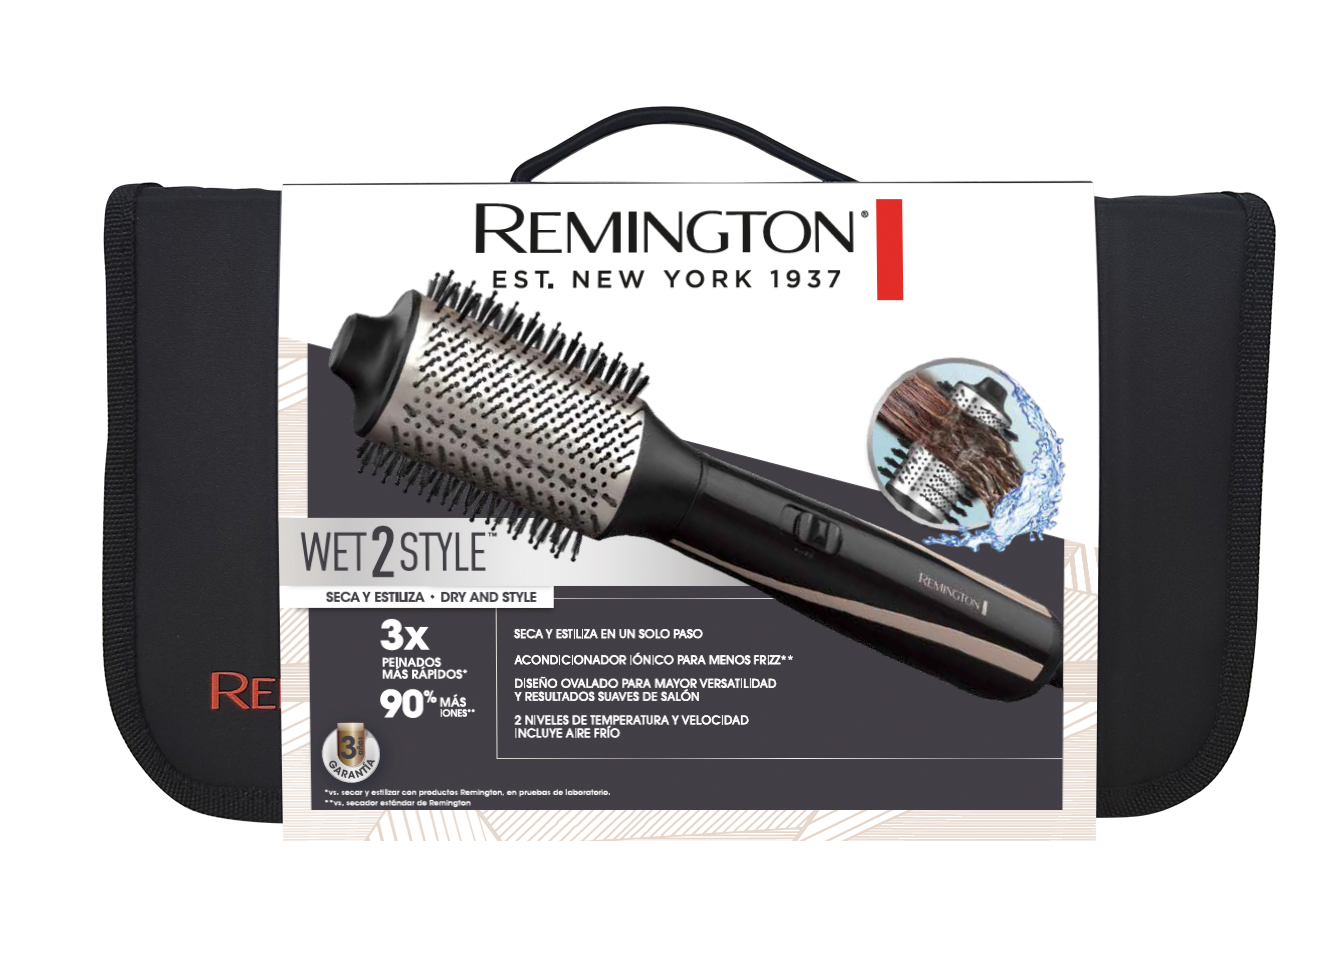 Cepillo de aire Remington Wet2Style – Remington El Salvador